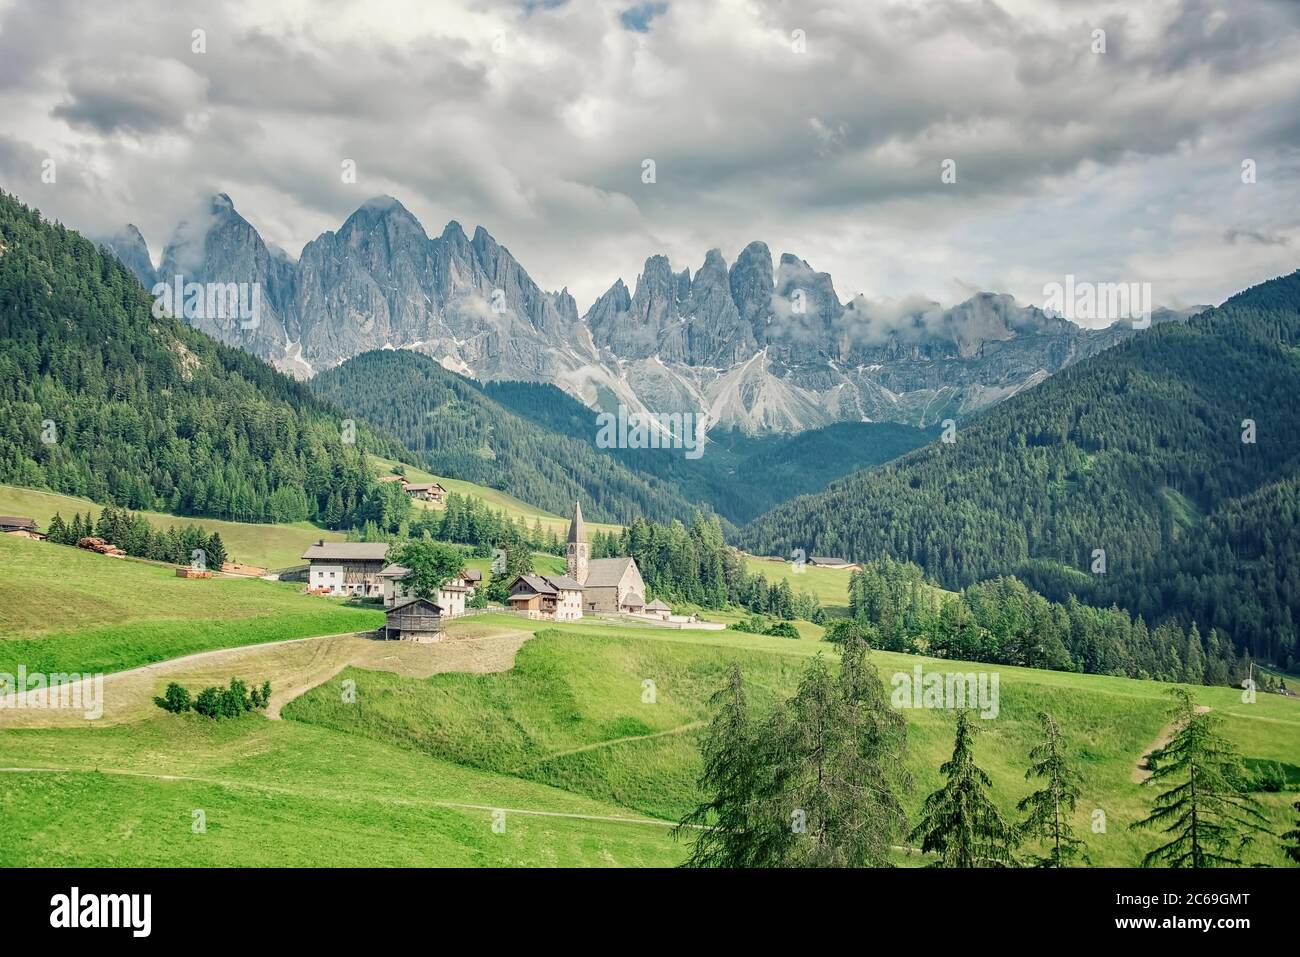 Village de Santa Maddalena avec de belles montagnes des Dolomites en arrière-plan, vallée du Val di Funes, Italie Banque D'Images